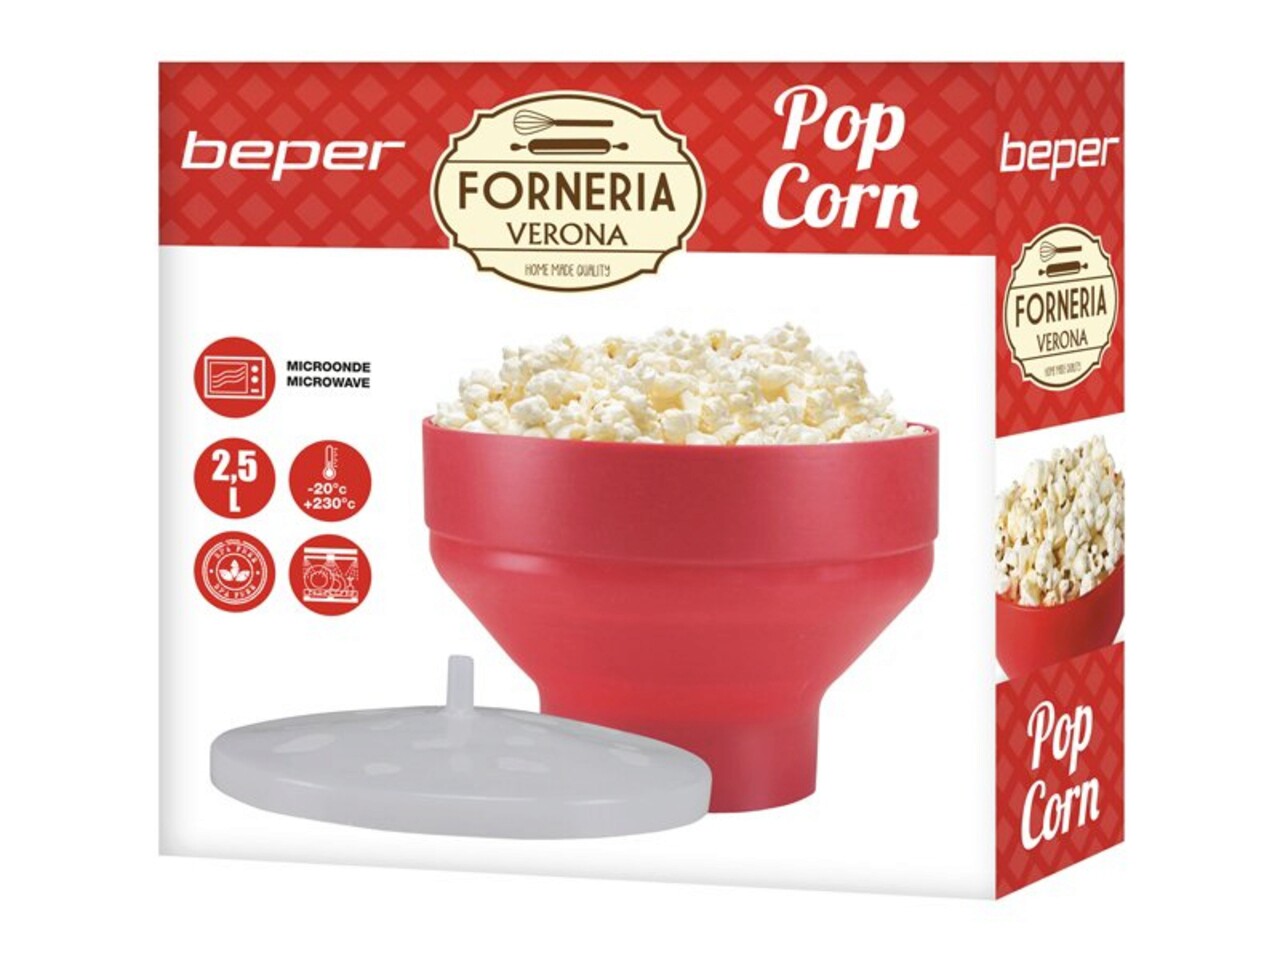 Aparat popcorn pentru cuptorul cu microunde Beper, 2.5 L, silicon, rosu/alb